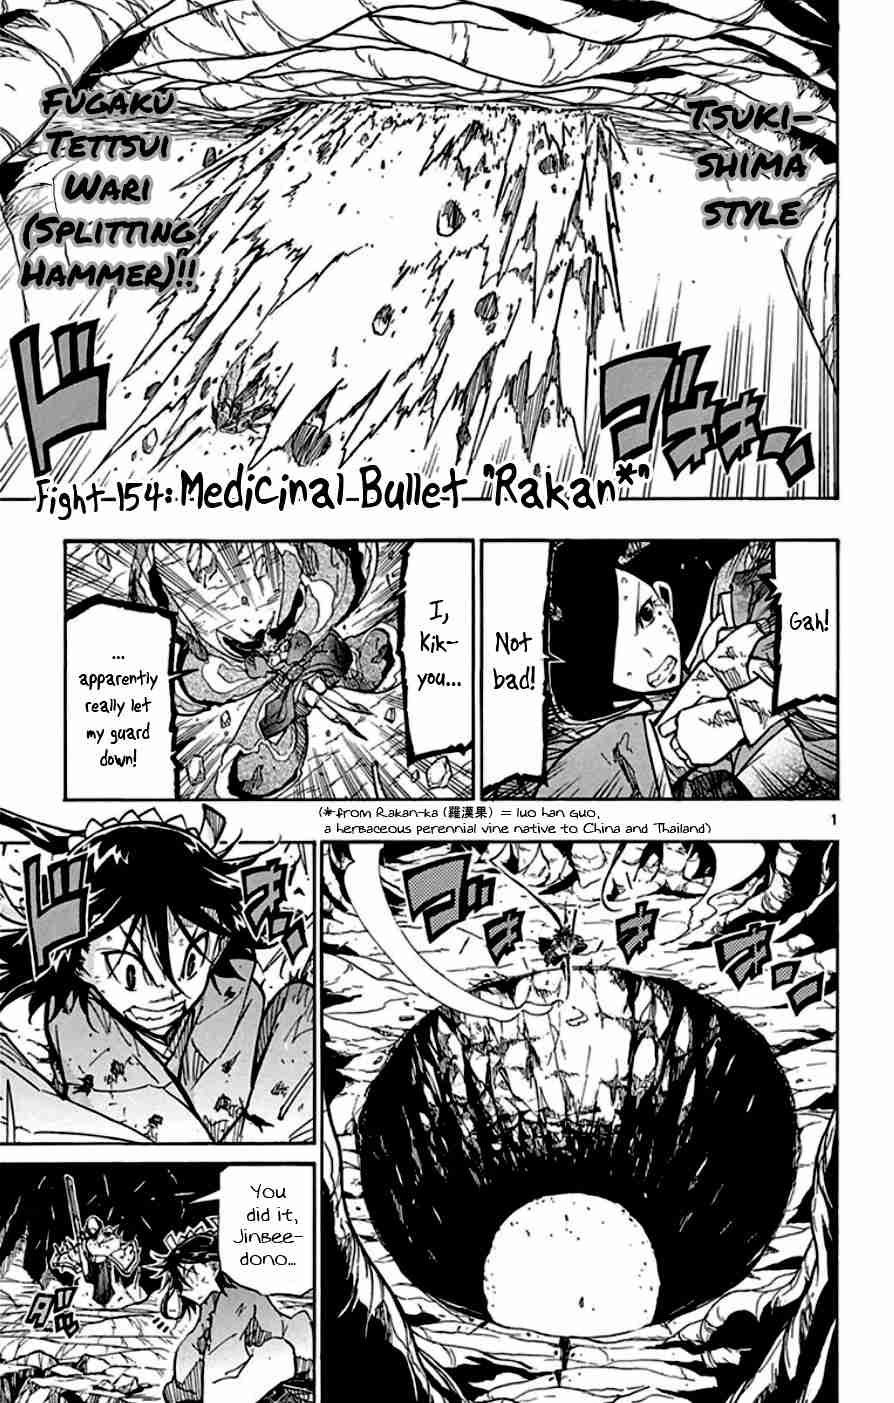 Joujuu Senjin!! Mushibugyo Vol. 16 Ch. 154 Medicinal Bullet "Rakan"